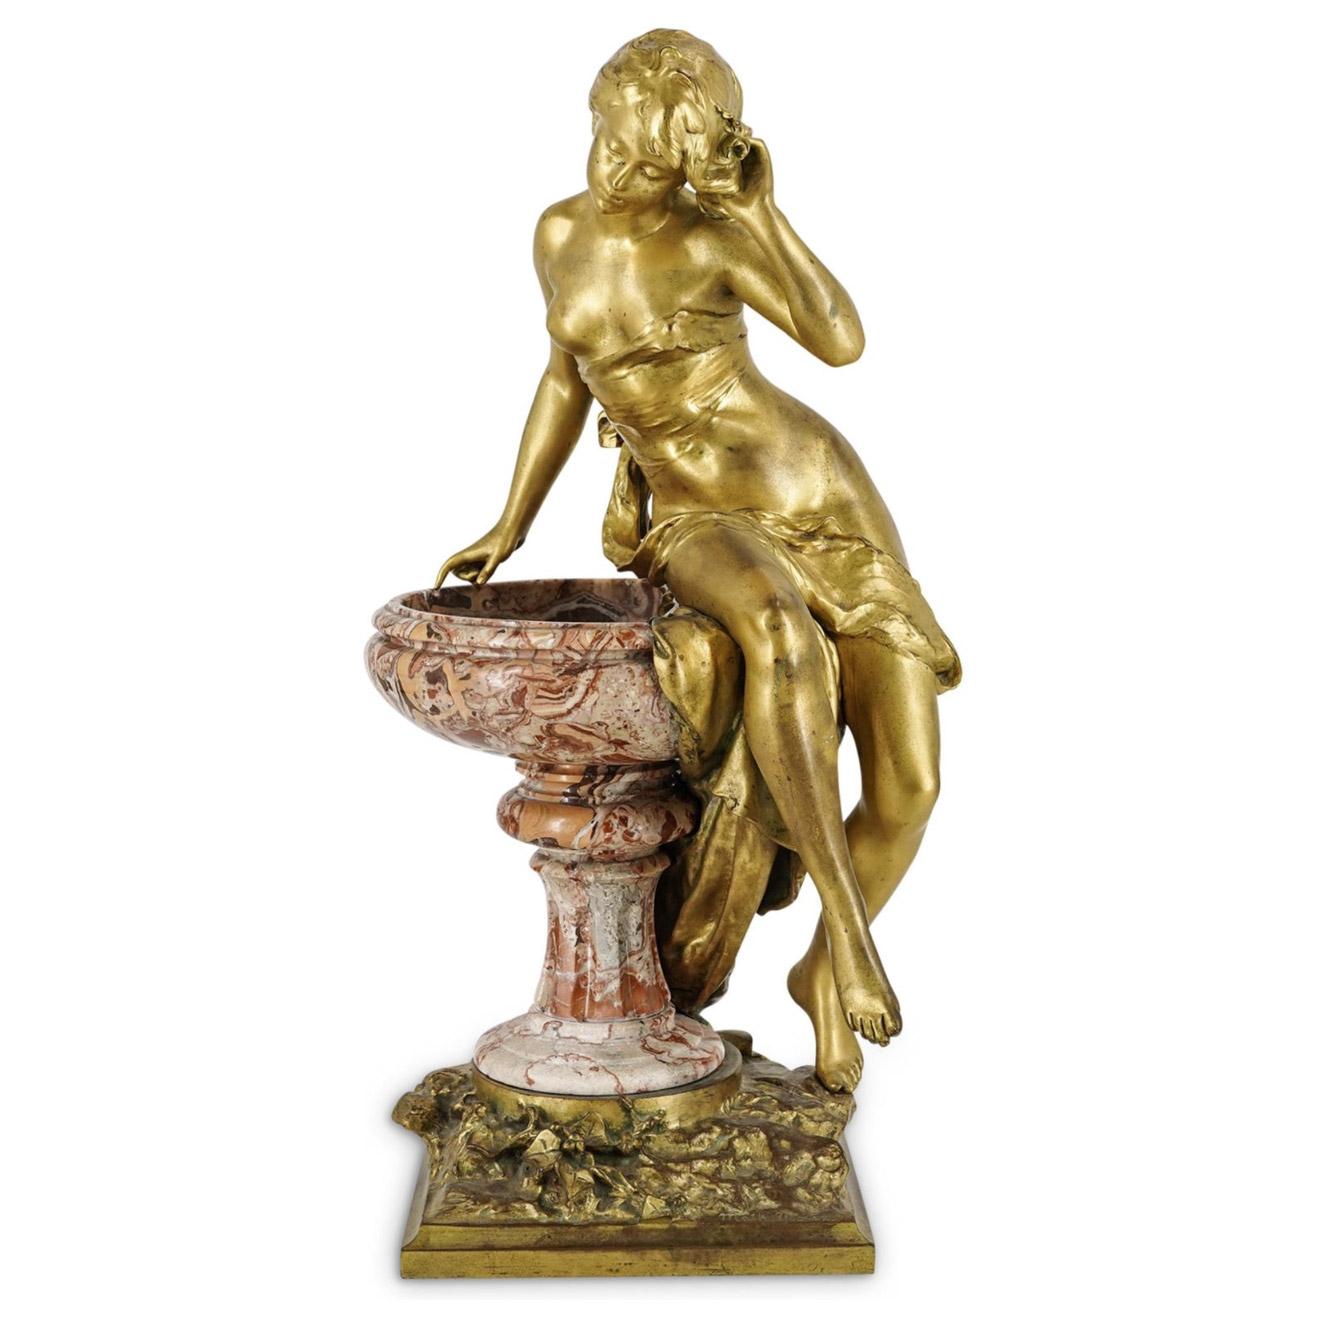 Eine weibliche vergoldete Bronzeskulptur, die eine junge, leicht entblößte Frau darstellt, die auf einem bunten Marmorbrunnen sitzt, der auf einem quadratischen, mit Blattwerk verzierten Bronzesockel steht. Signiert "M. Moureau".

Künstler: Mathurin